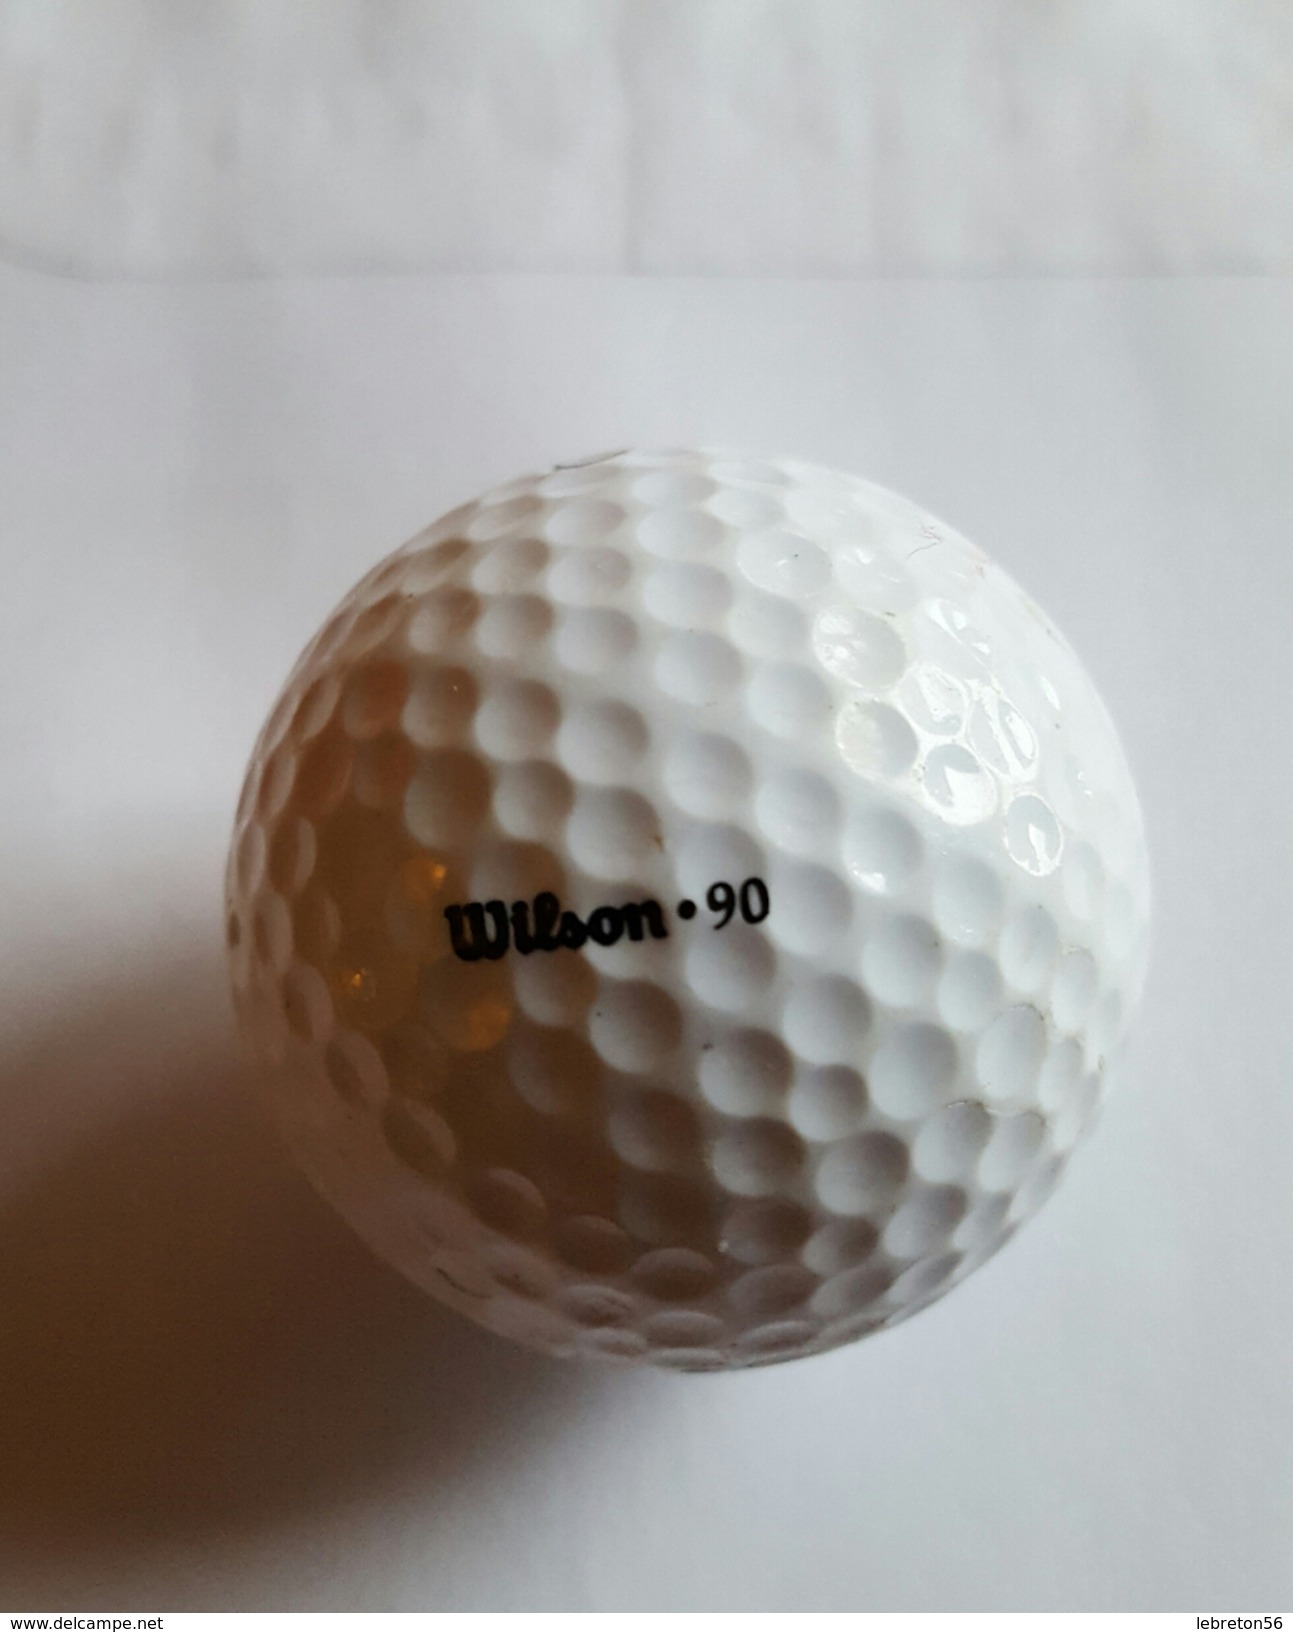 Joli 1 Balle De Golf Collection ULTRA 3 Wilson.90 - Abbigliamento, Souvenirs & Varie